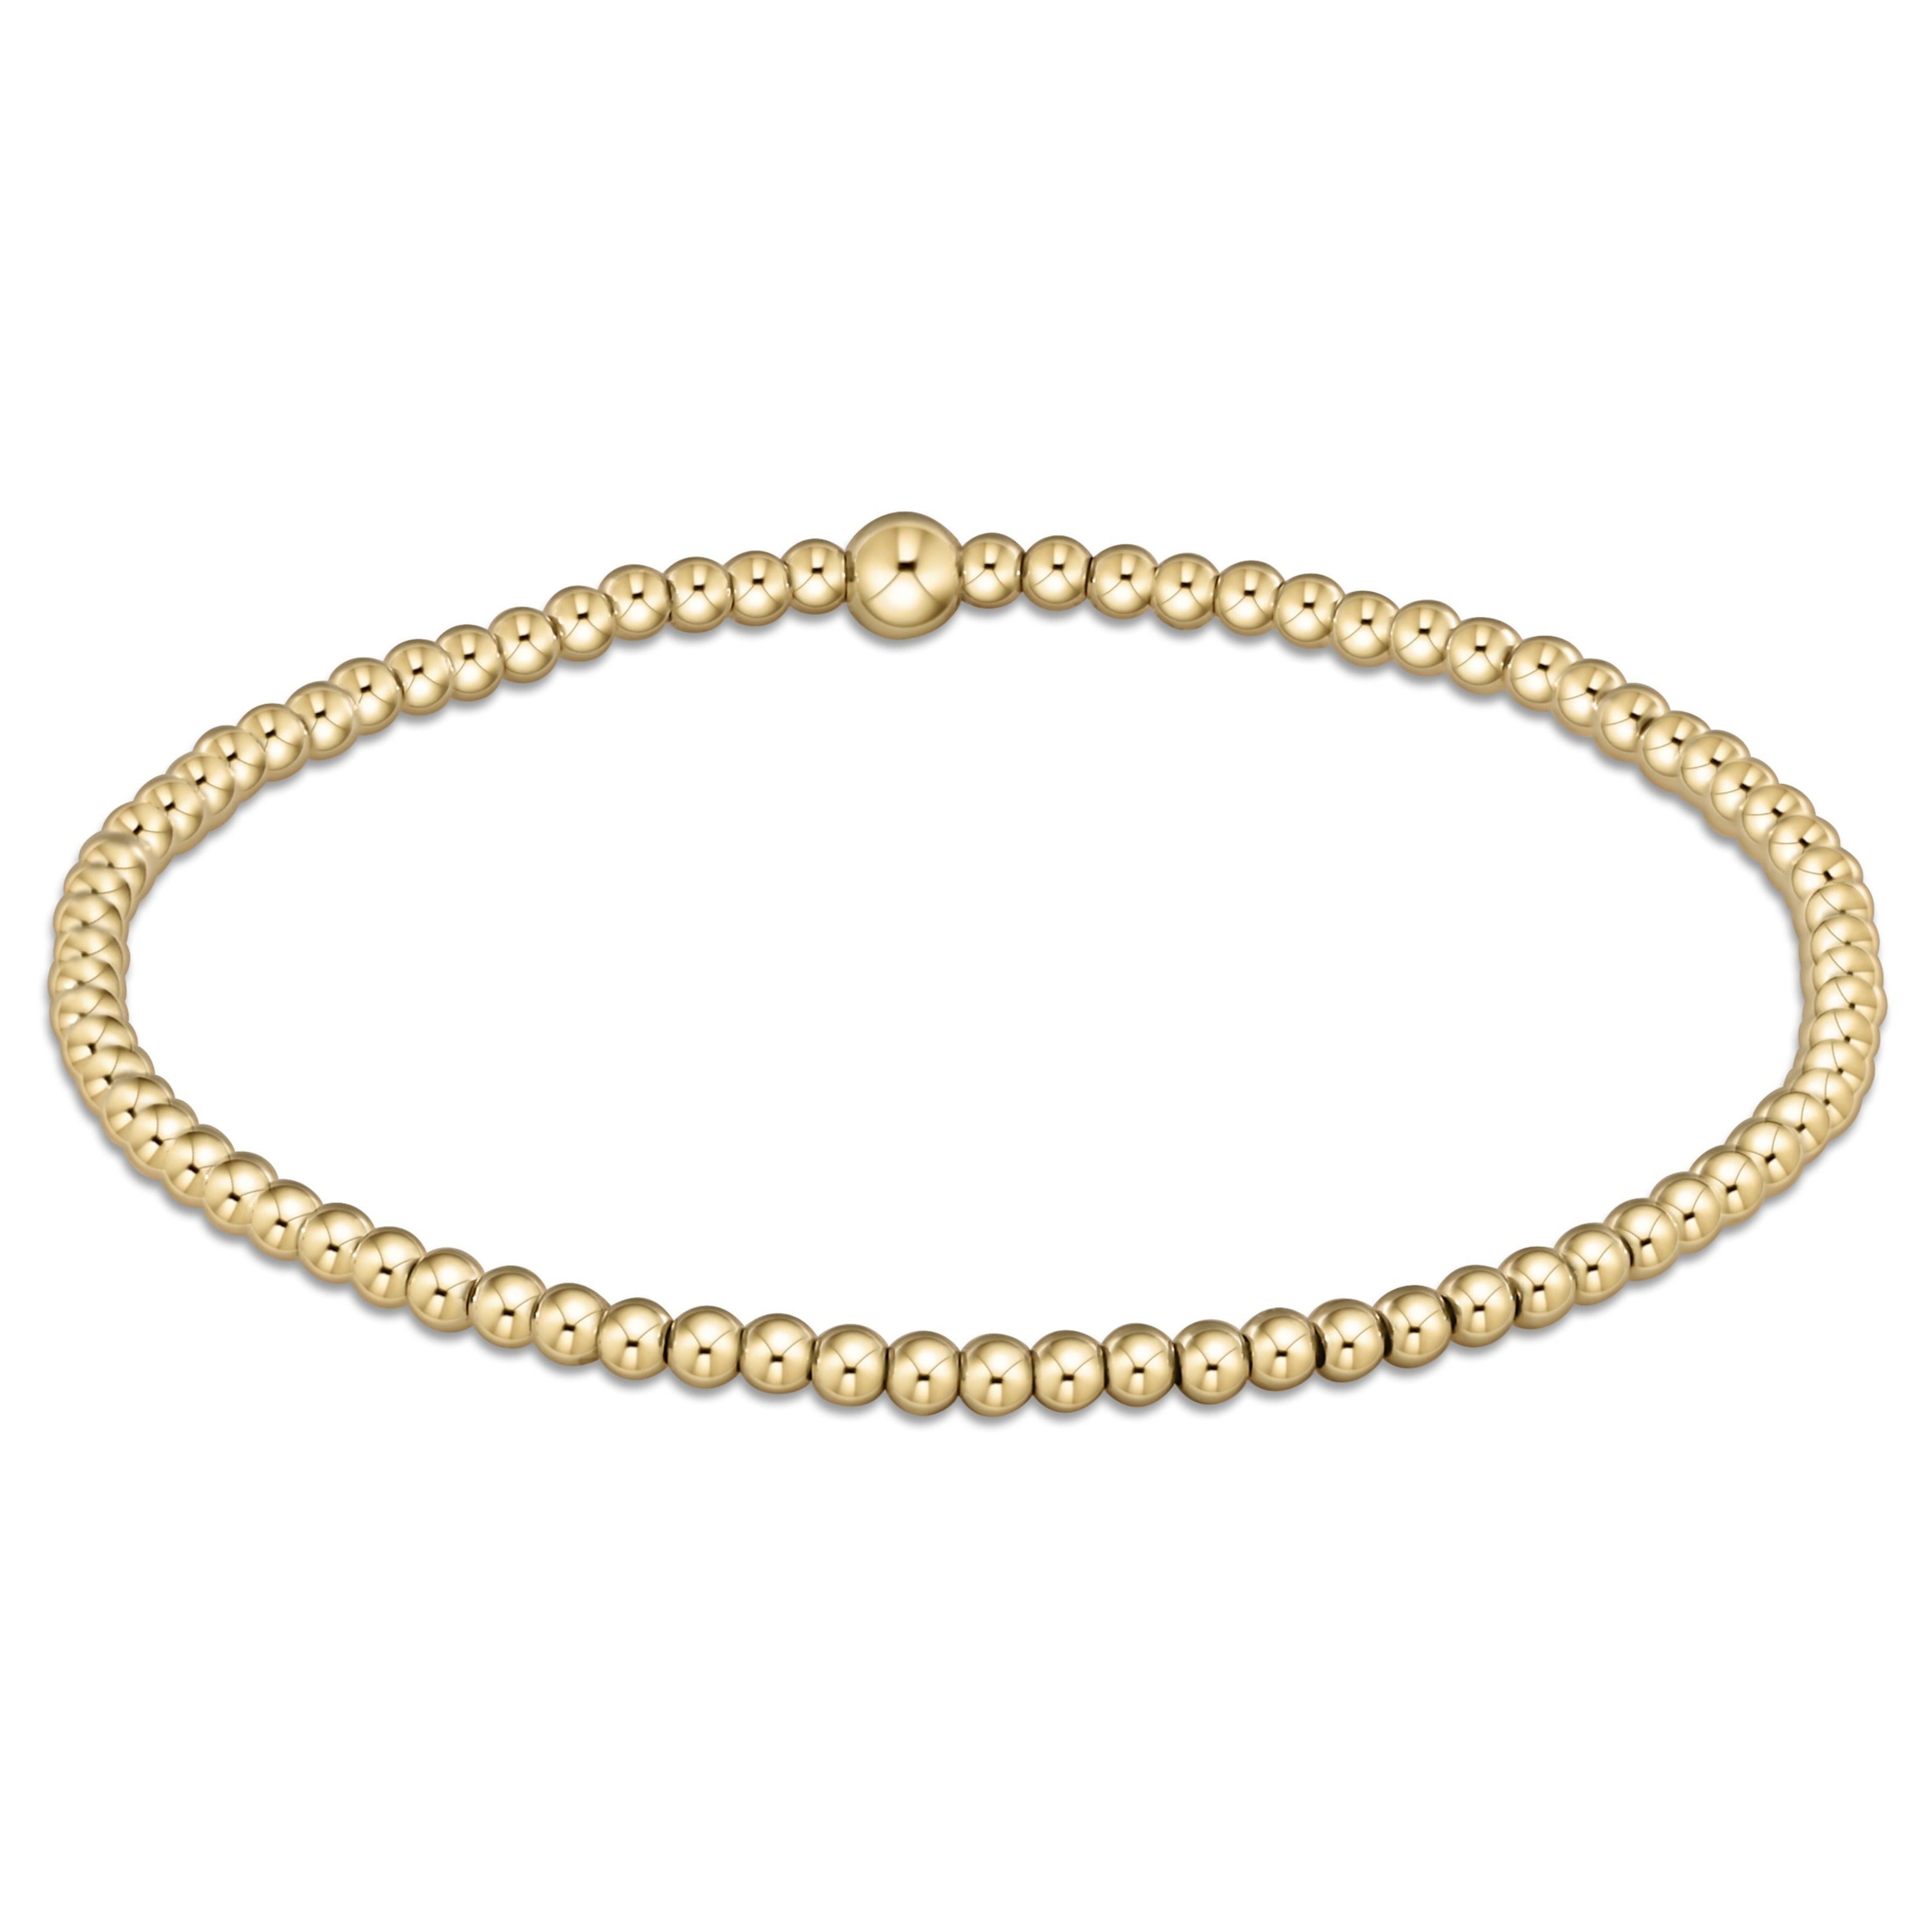 Gold Beaded Bracelet 2.5mm 3mm 4mm 5mm 14k Gold Filled Bead